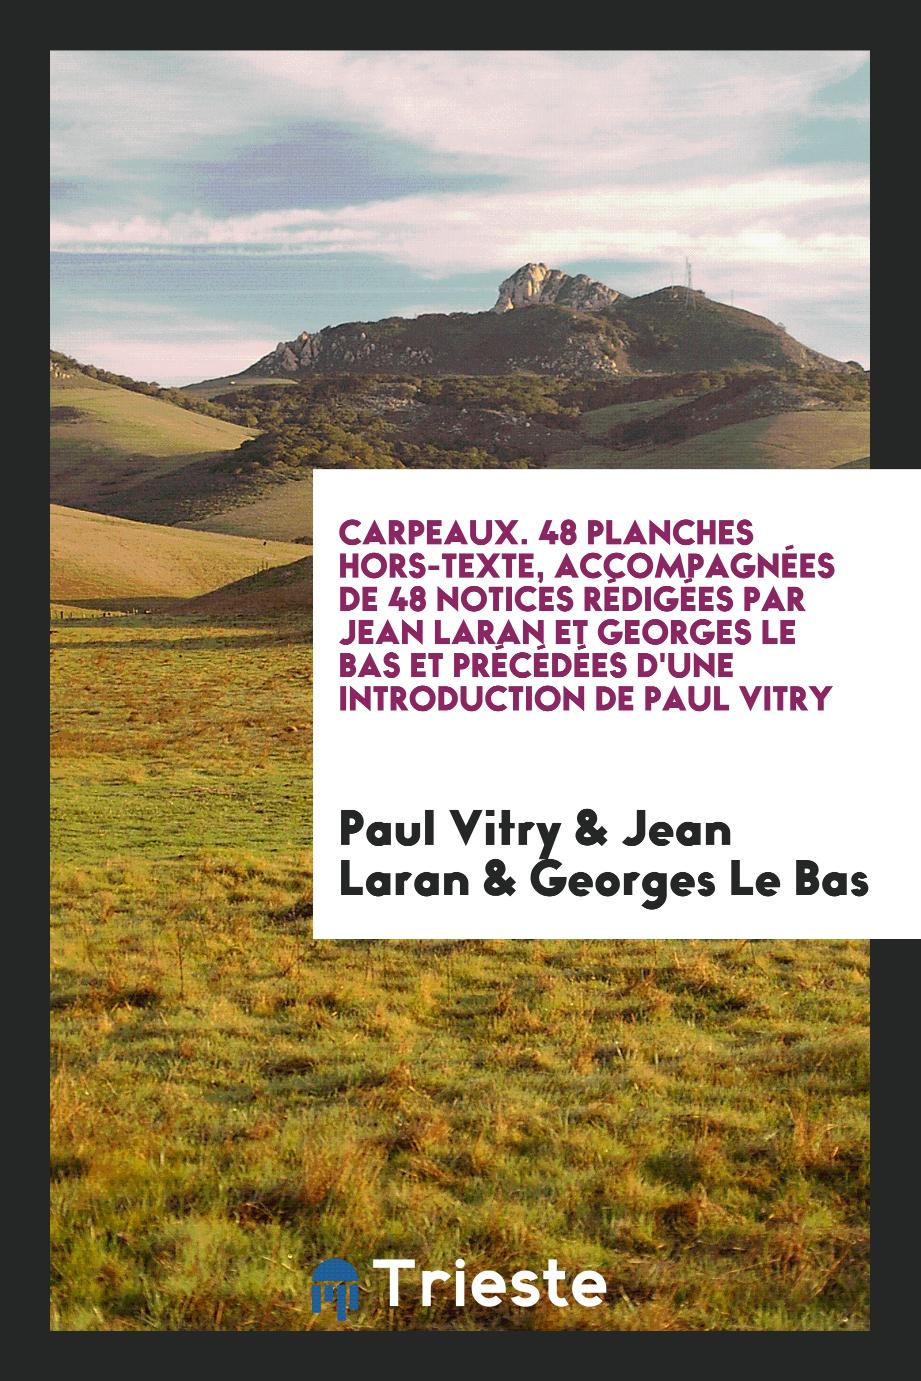 Carpeaux. 48 planches hors-texte, accompagnées de 48 notices rédigées par Jean Laran et Georges Le Bas et précédées d'une introduction de Paul Vitry